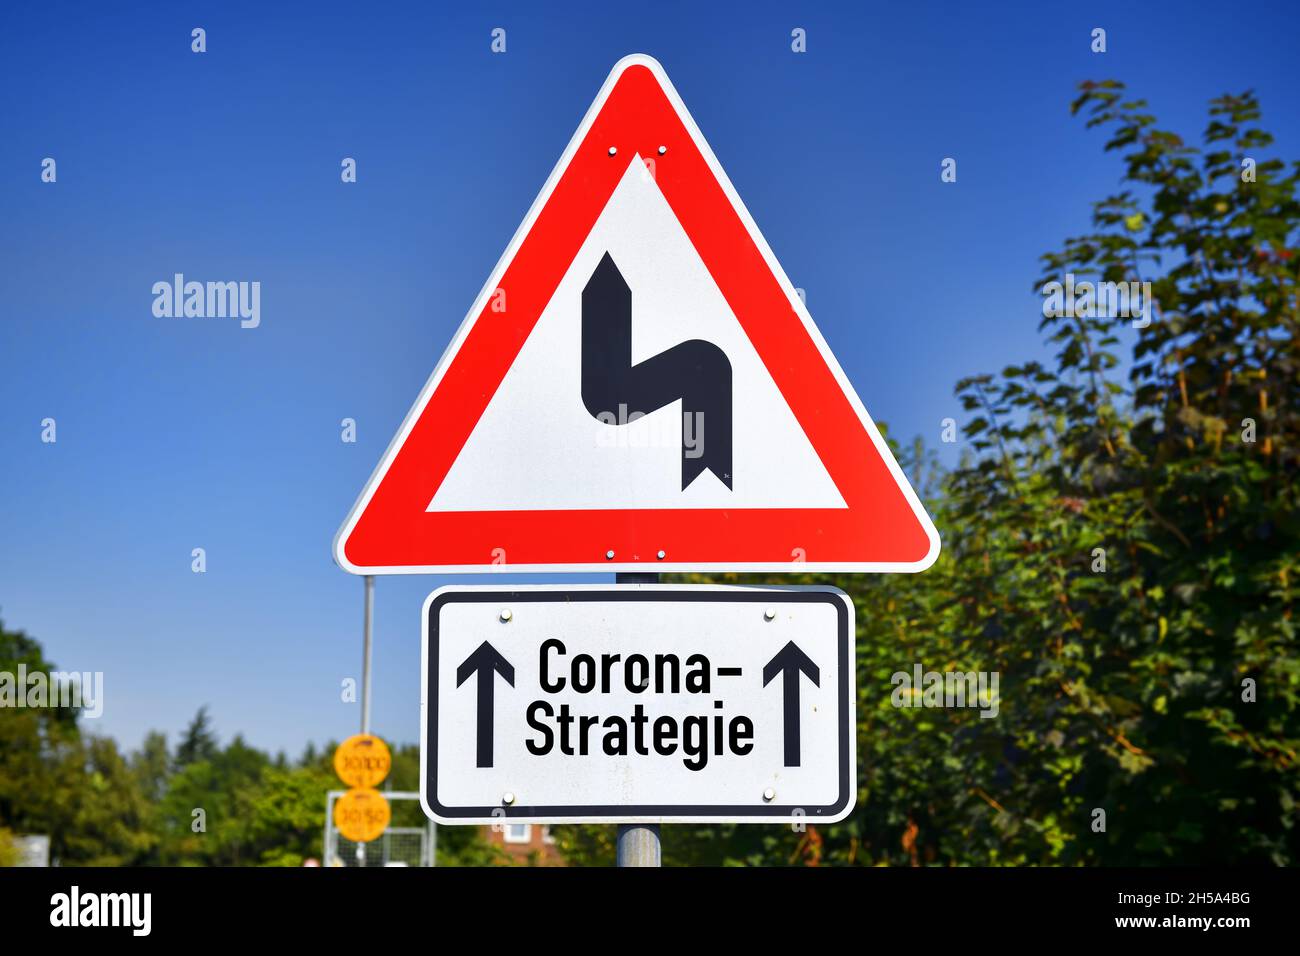 FTOMONTAGE, Schild mit Kurvensymbol und Aufschrift Corona-Strategie, Symbolfoto fuer Schlingerkurs in der Corona-Pandemiebekaempfung Foto Stock